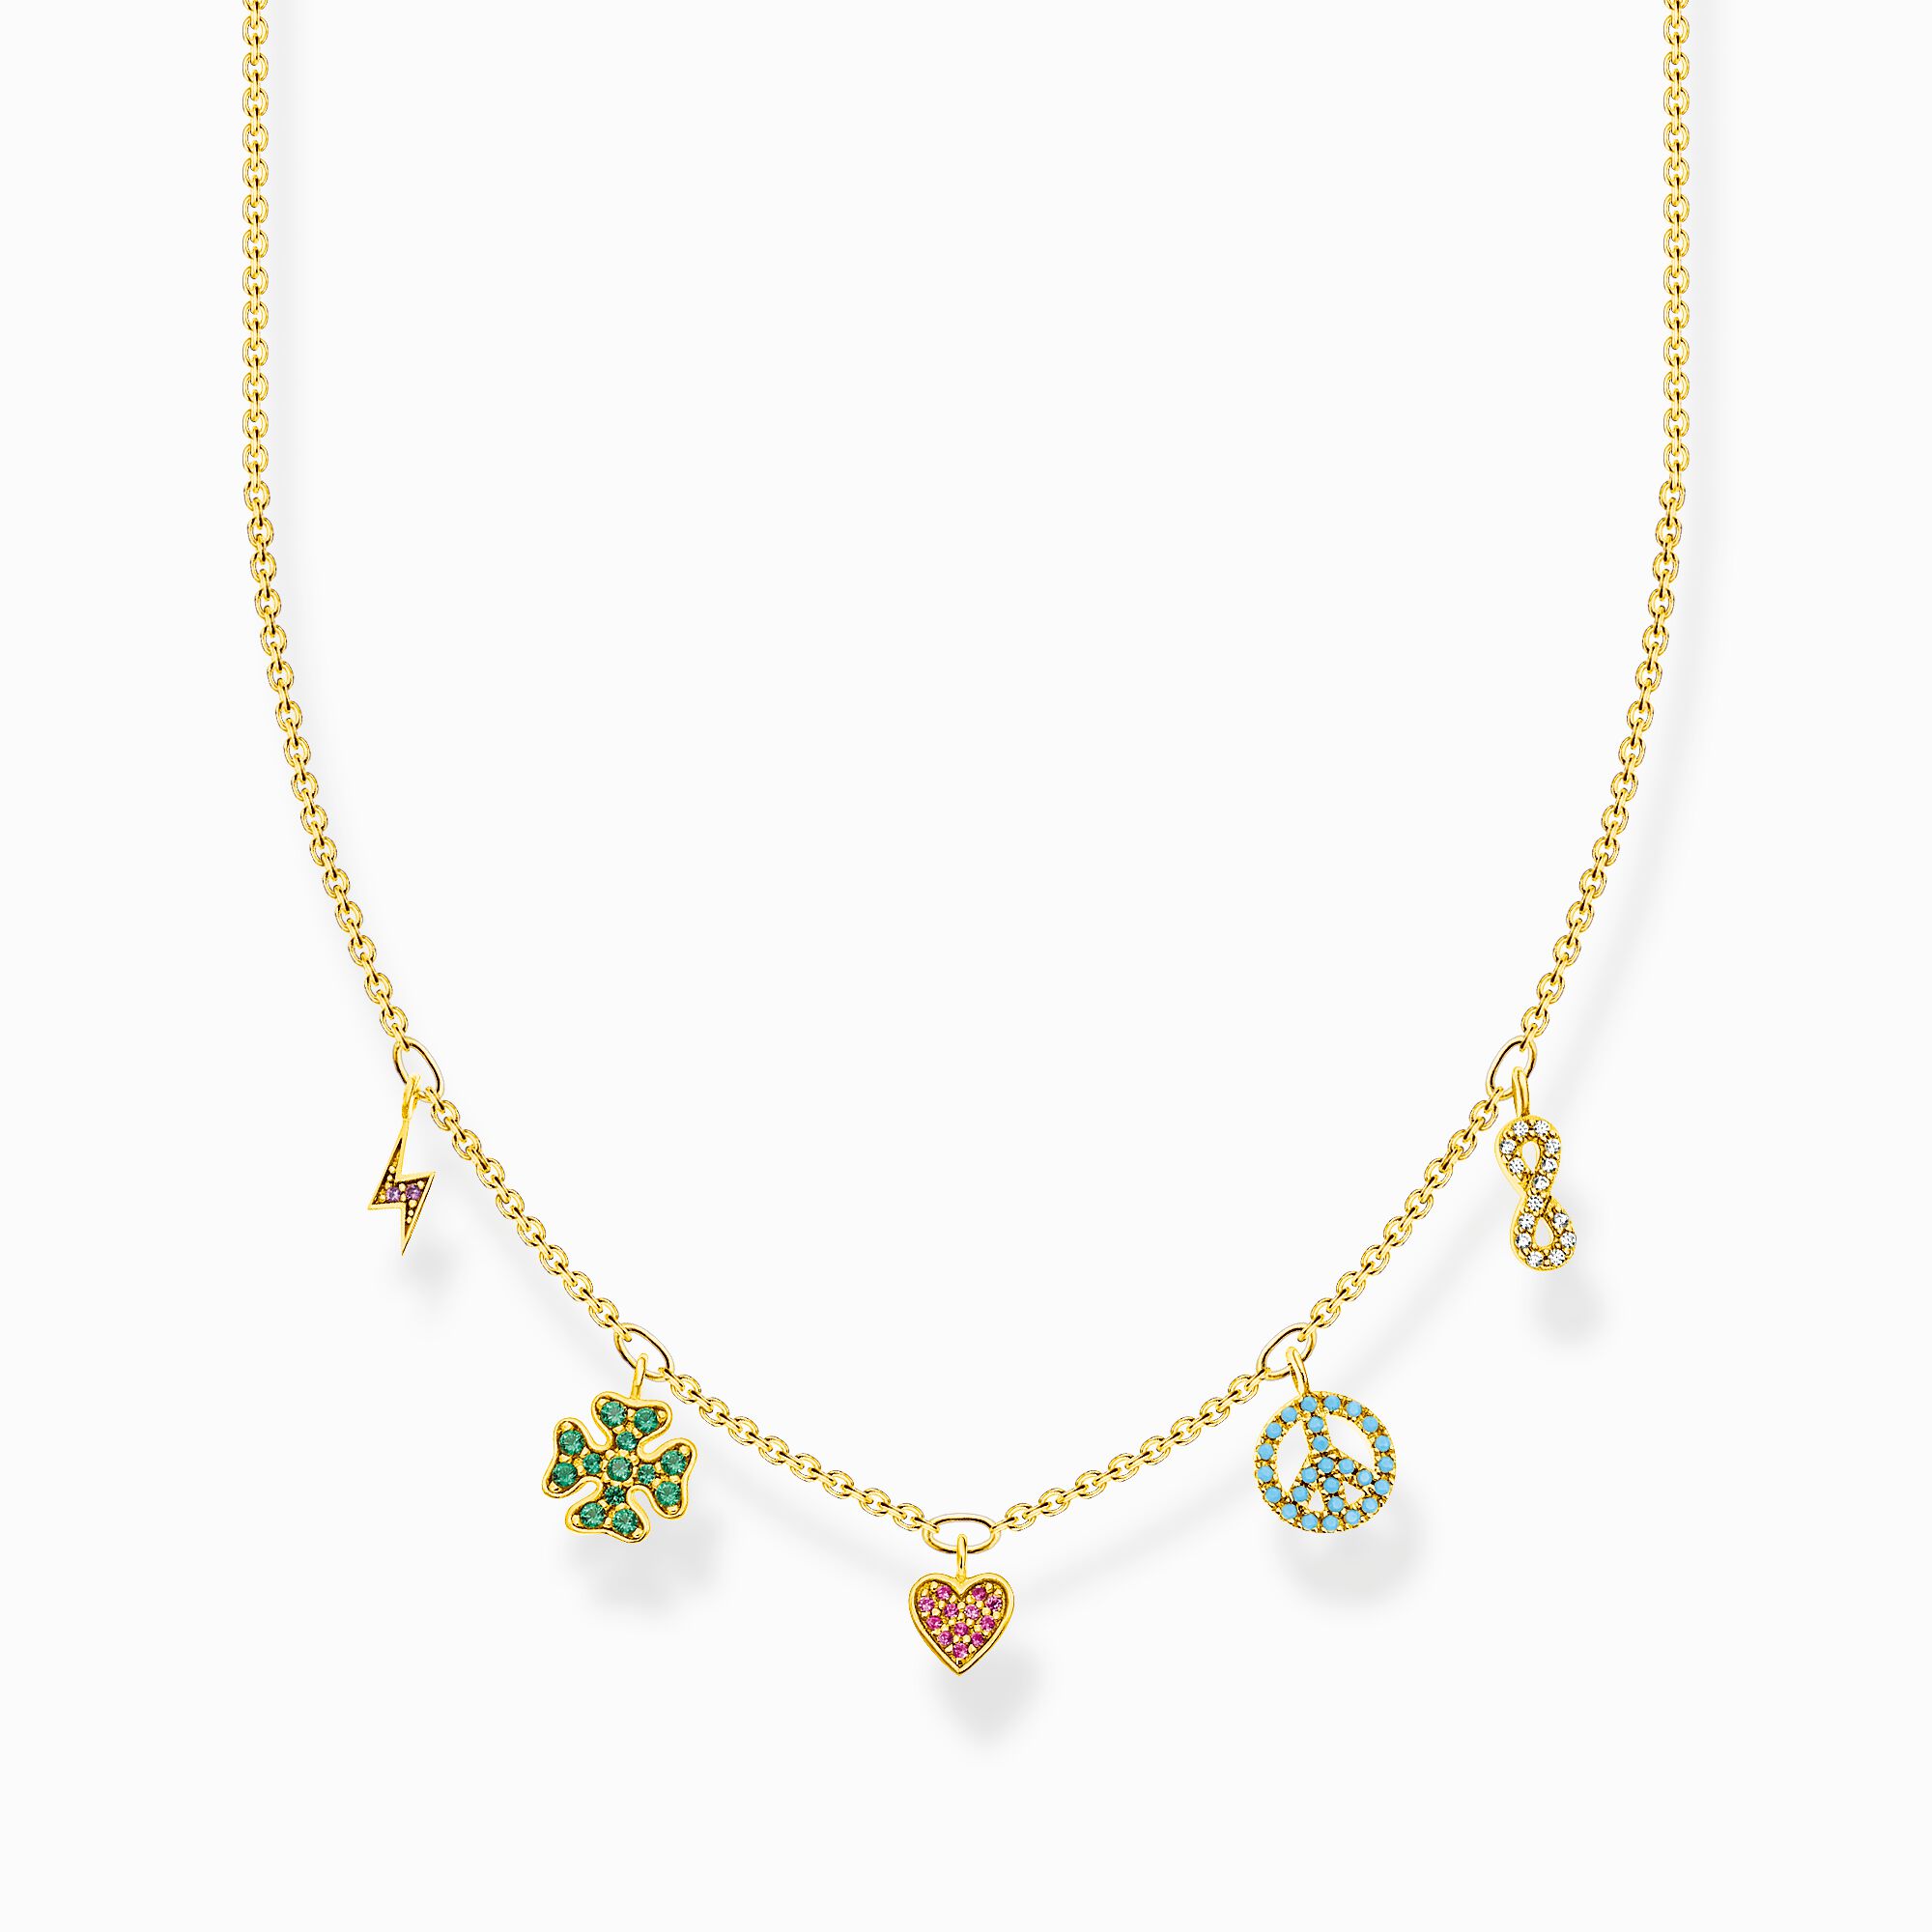 Halsband med symboler brokig guld ur kollektionen Charming Collection i THOMAS SABO:s onlineshop